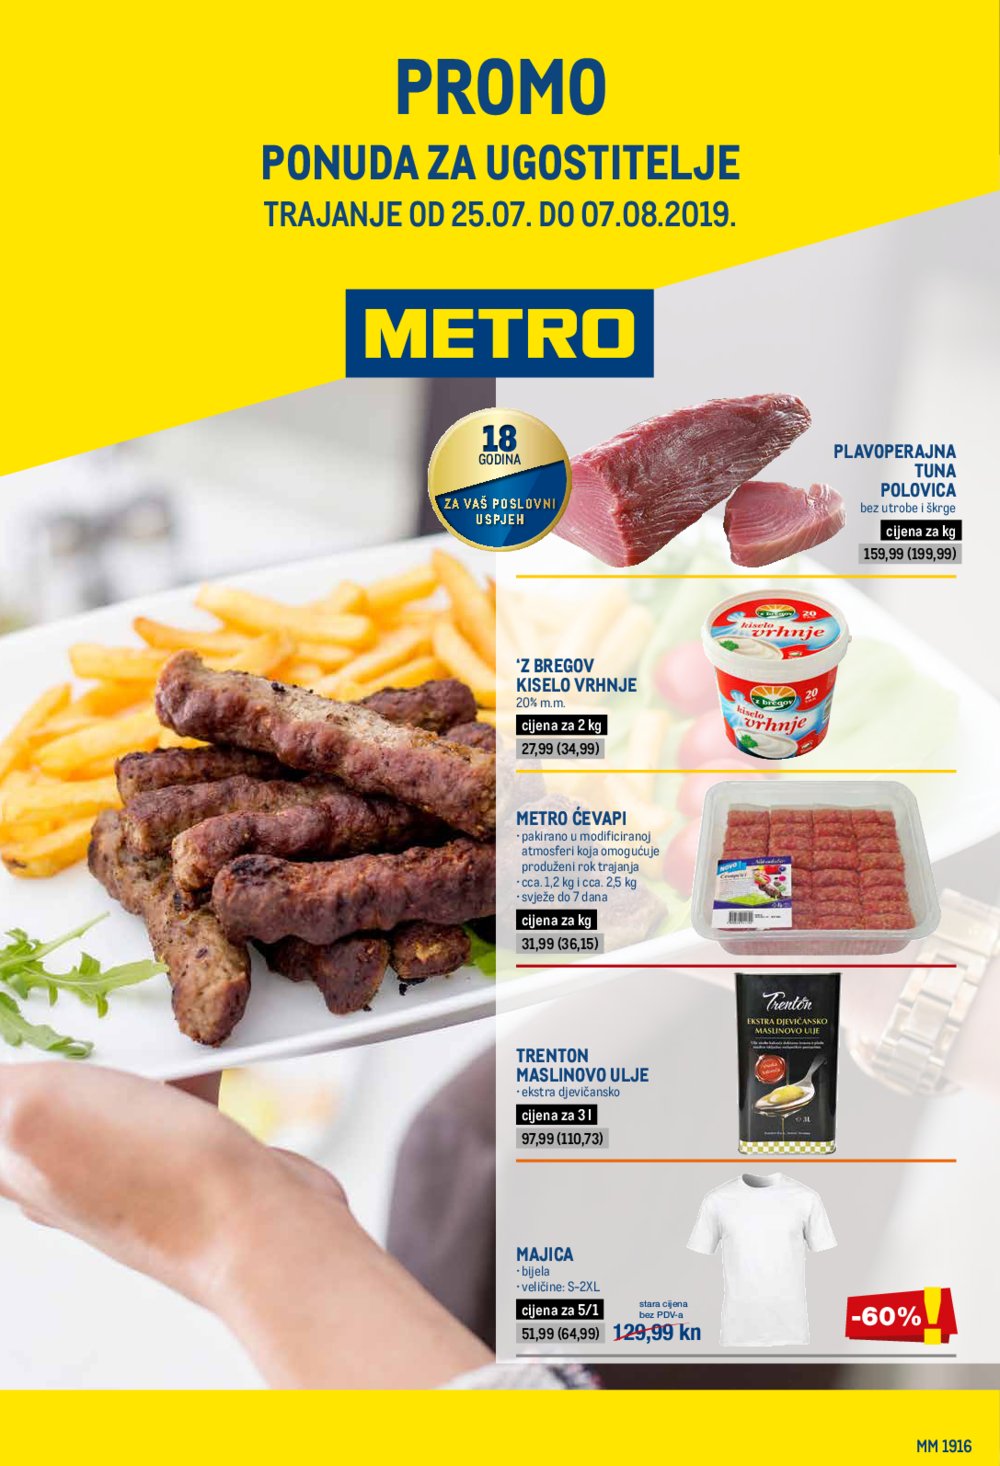 Metro katalog Promotivna ponuda za ugostitelje 25.07.-07.08.2019.